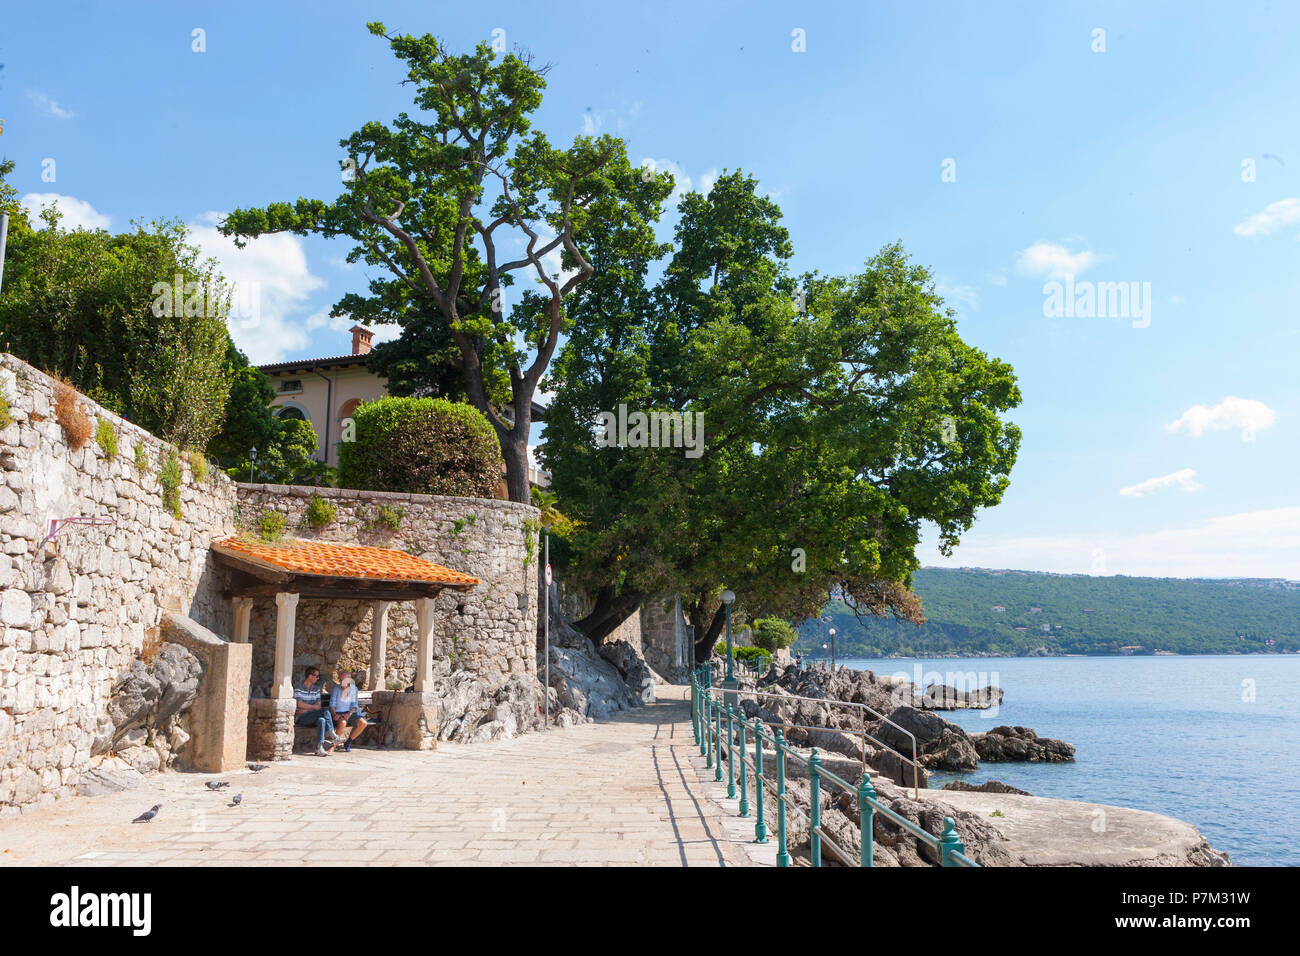 La Croatie, Istrie, Kvarner, Opatija, ville thermale, du bord de mer Lungomare, touristes, Banque D'Images